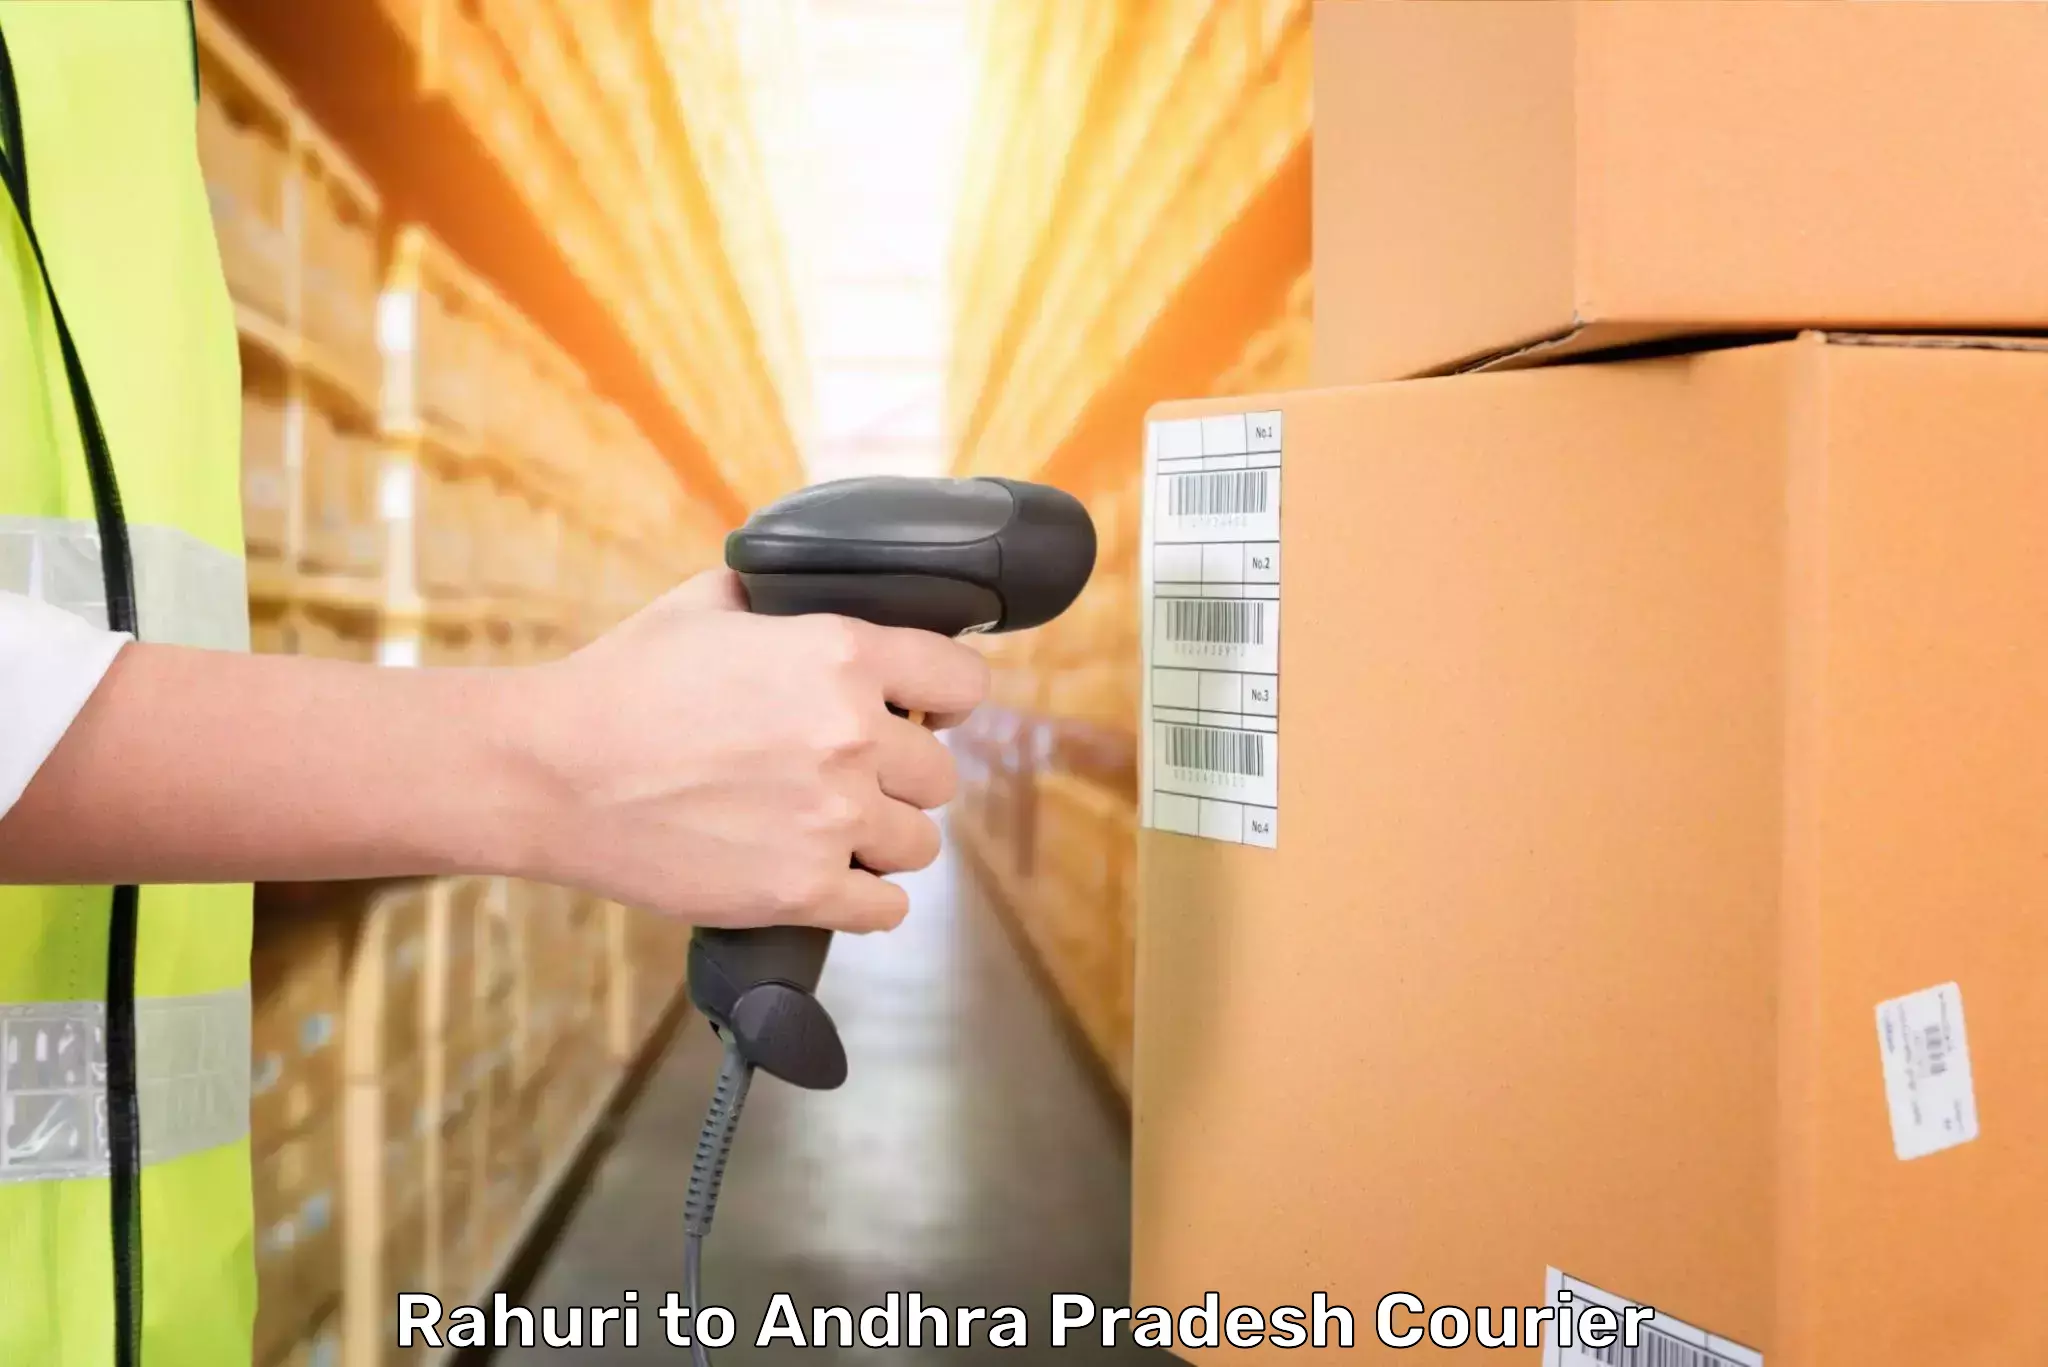 Luggage transport company Rahuri to Gopalapatnam